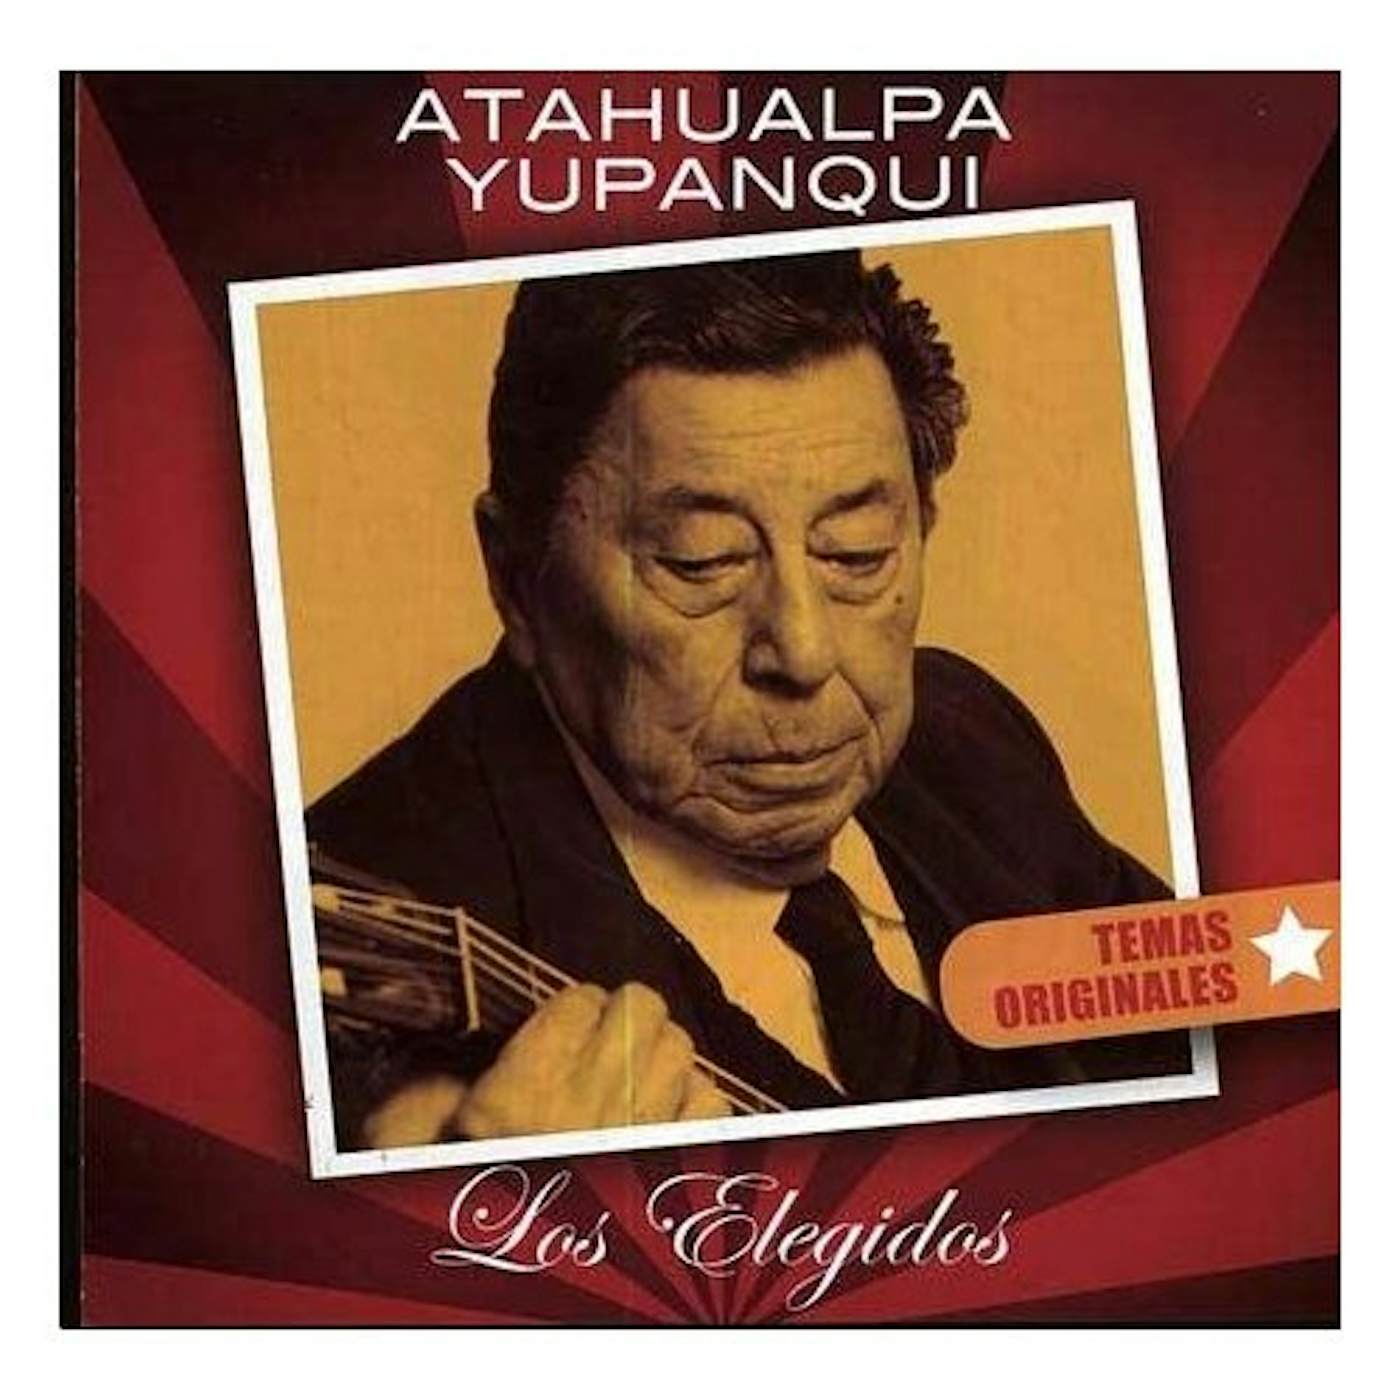 Atahualpa Yupanqui ELEGIDOS CD